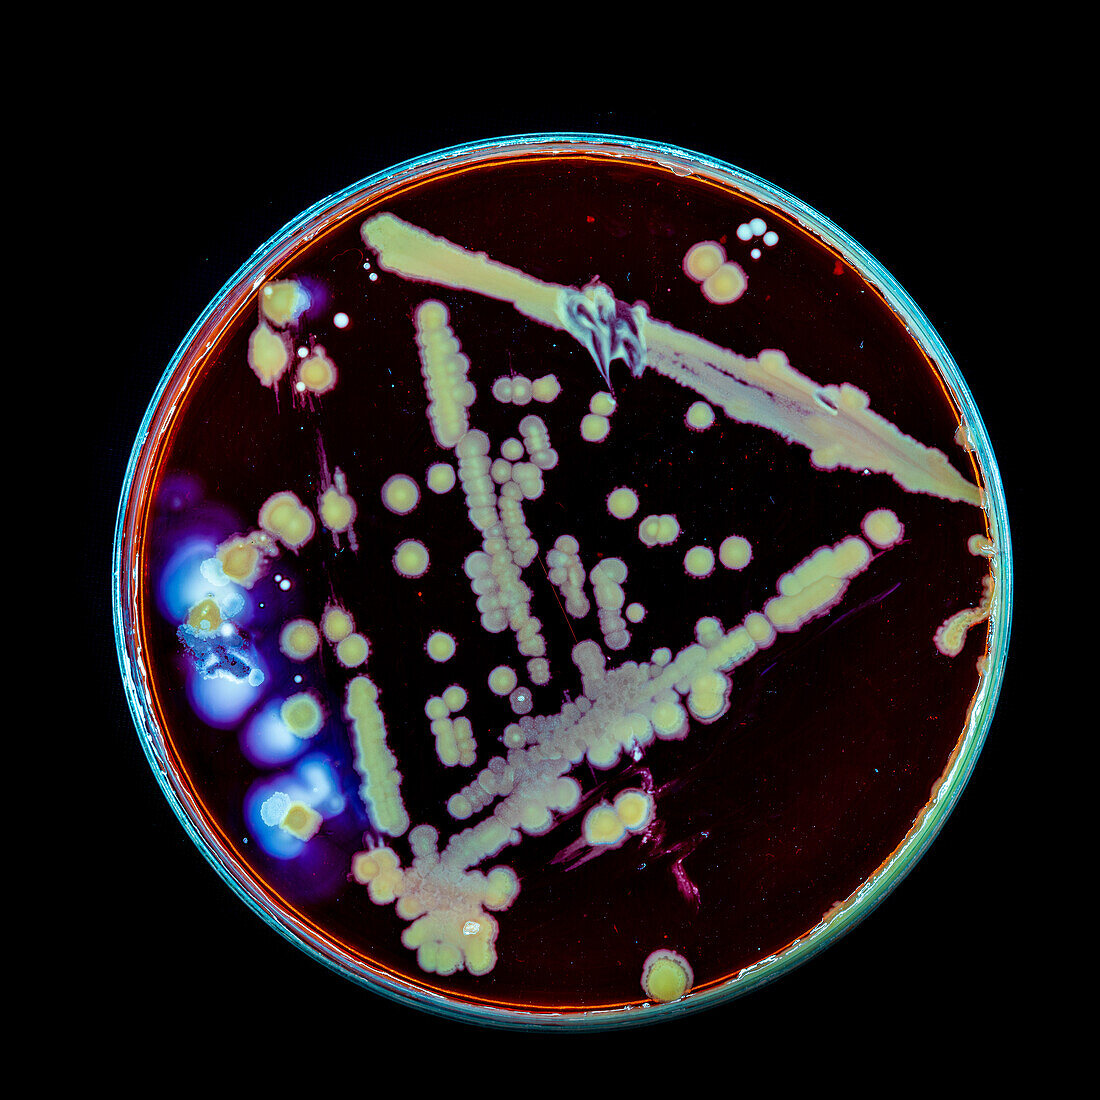 Bacteria and fungi cultured on Petri dish